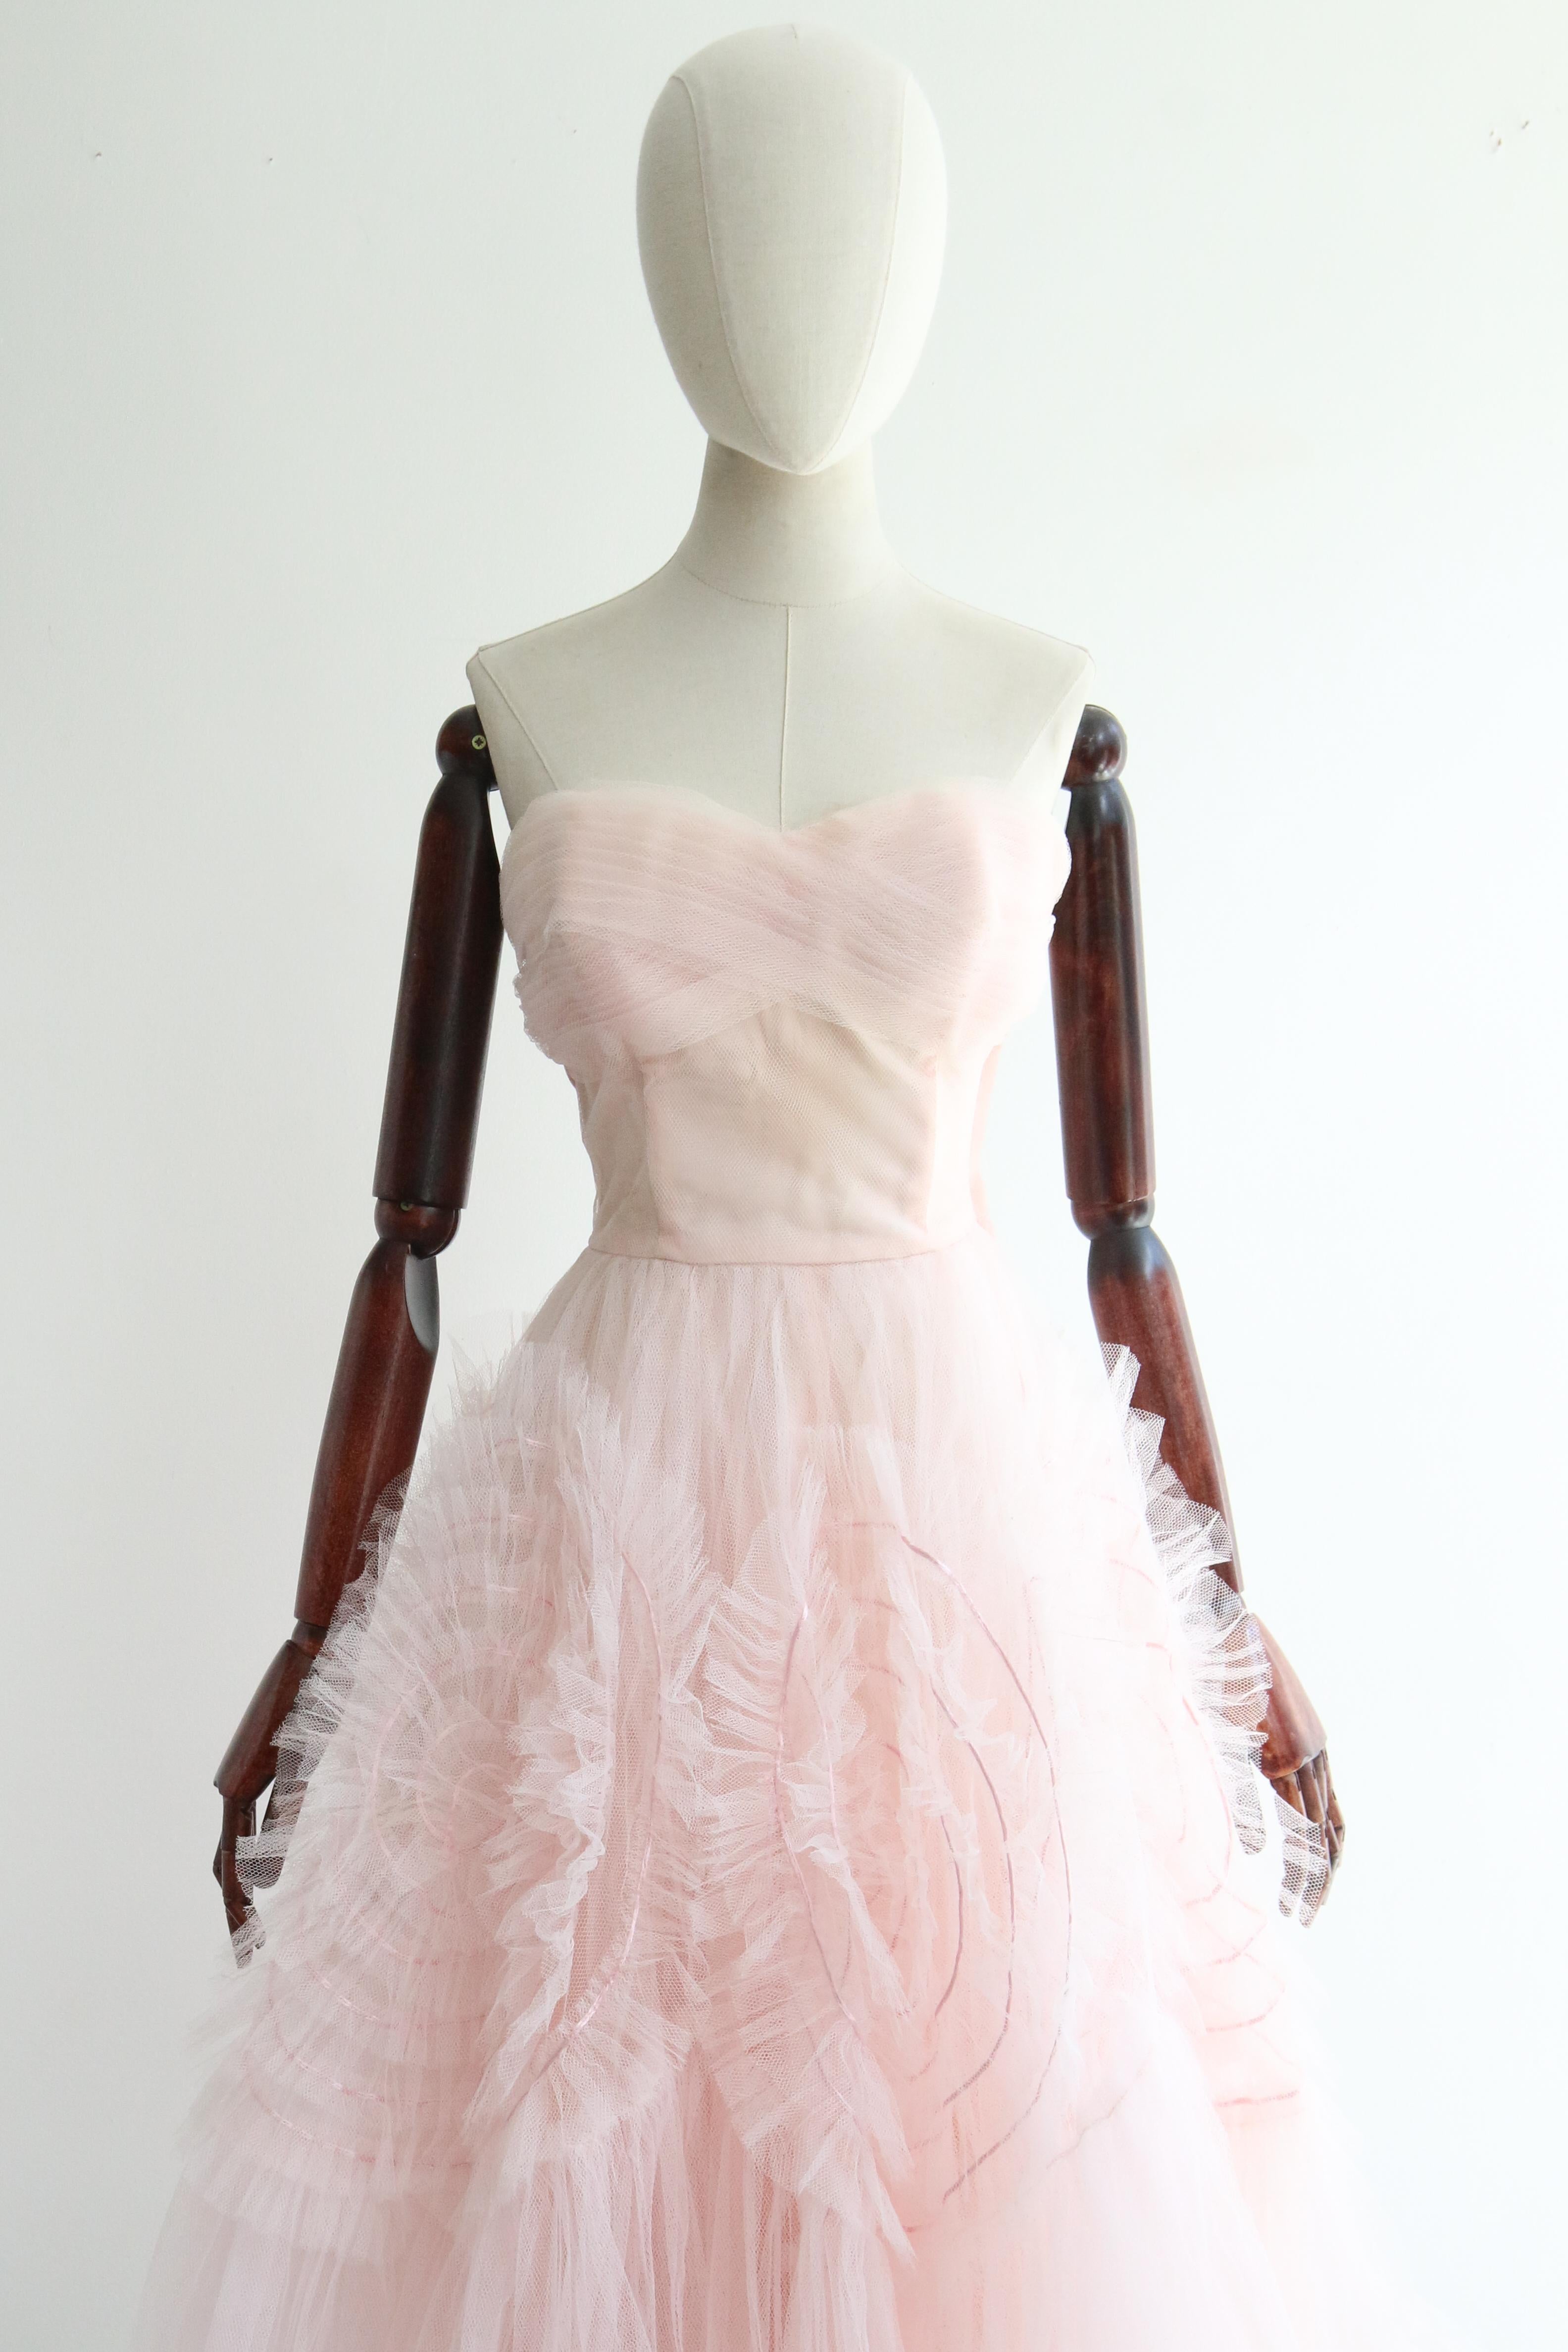 Dieses kultige Kleid aus den 1950er Jahren aus rosa Tüll mit zarten, kreisrunden Satindetails ist genau das Richtige für einen besonderen Anlass. 

Der trägerlose Schnitt des Kleides hat einen herzförmigen Ausschnitt, der von einer Bordüre aus